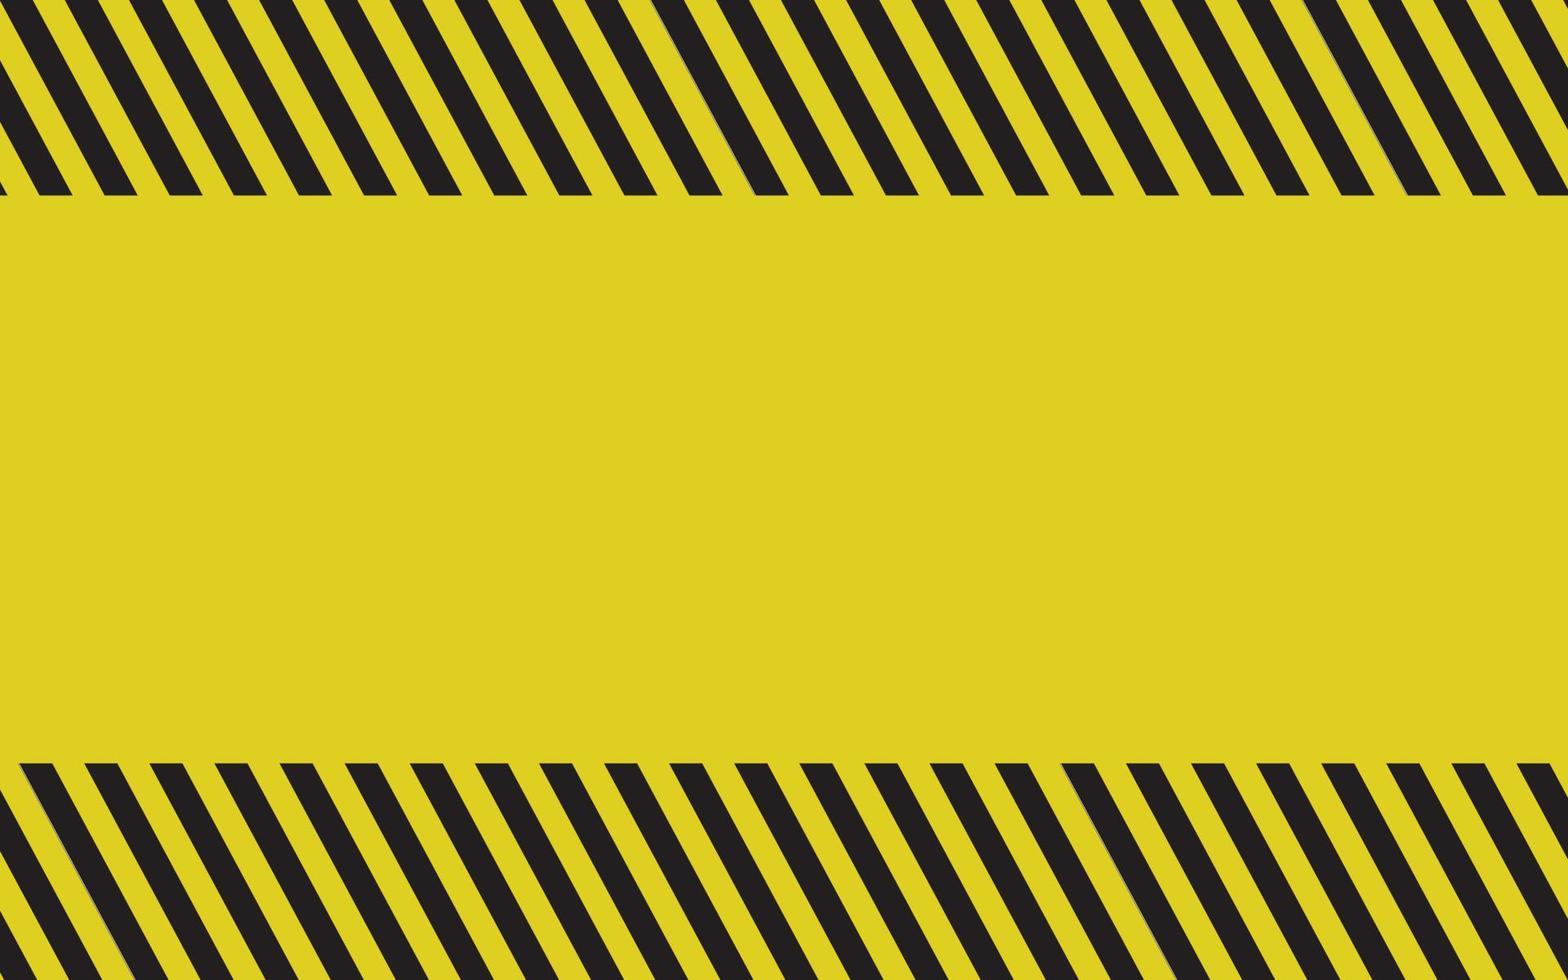 svart och gul varningslinje randig rektangulär bakgrund, gula och svarta ränder på diagonalen, en varning om att vara försiktig med den potentiella faran vektor mall skylt kant